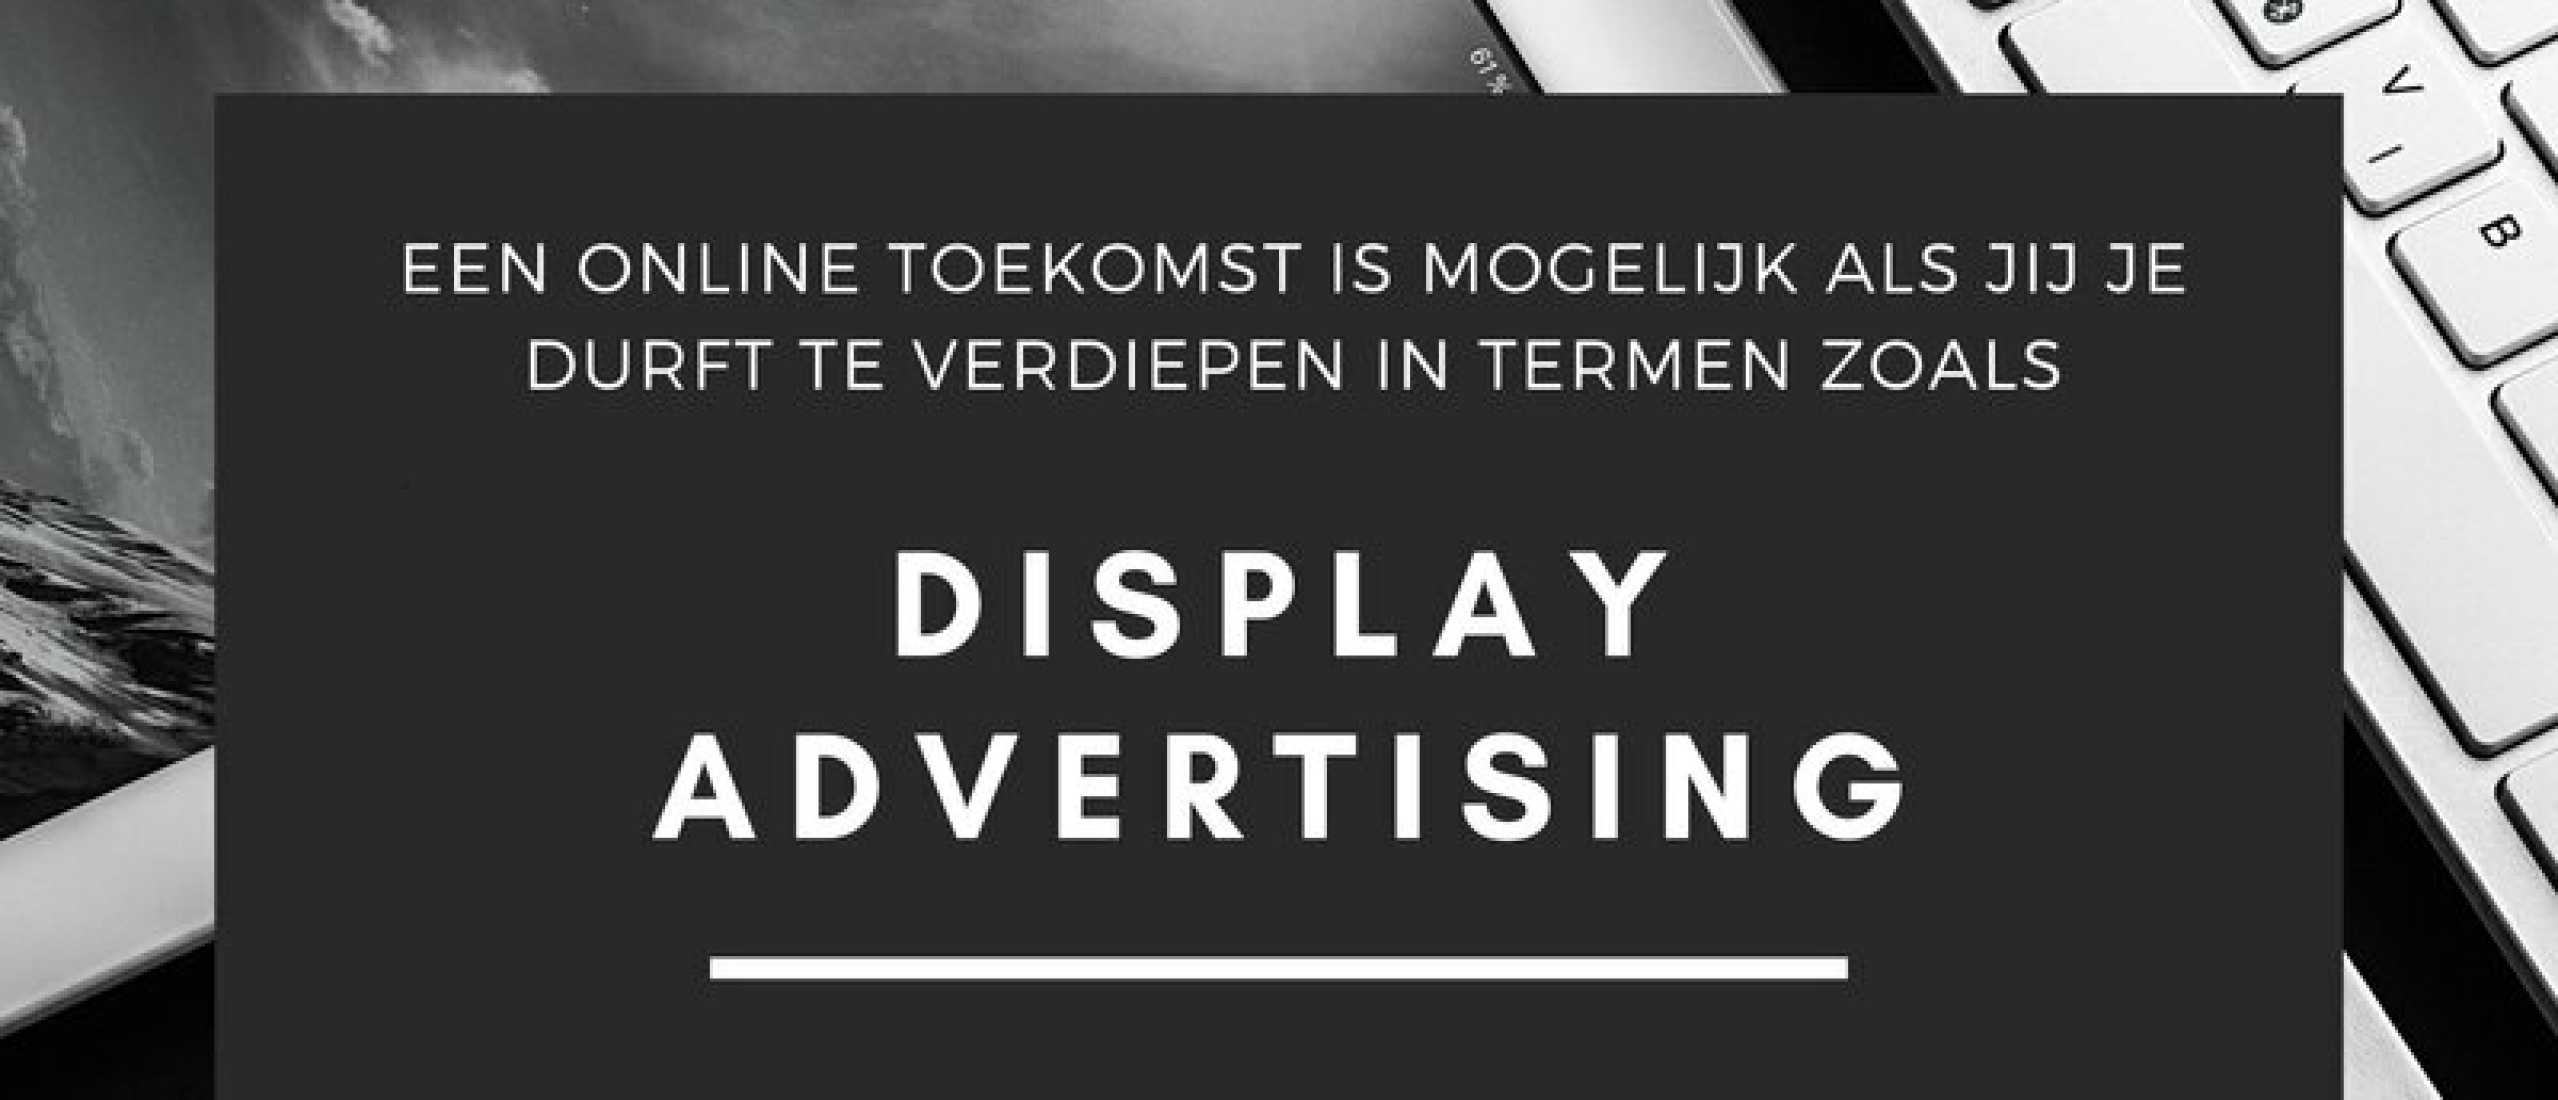 Display Advertising Betekenis